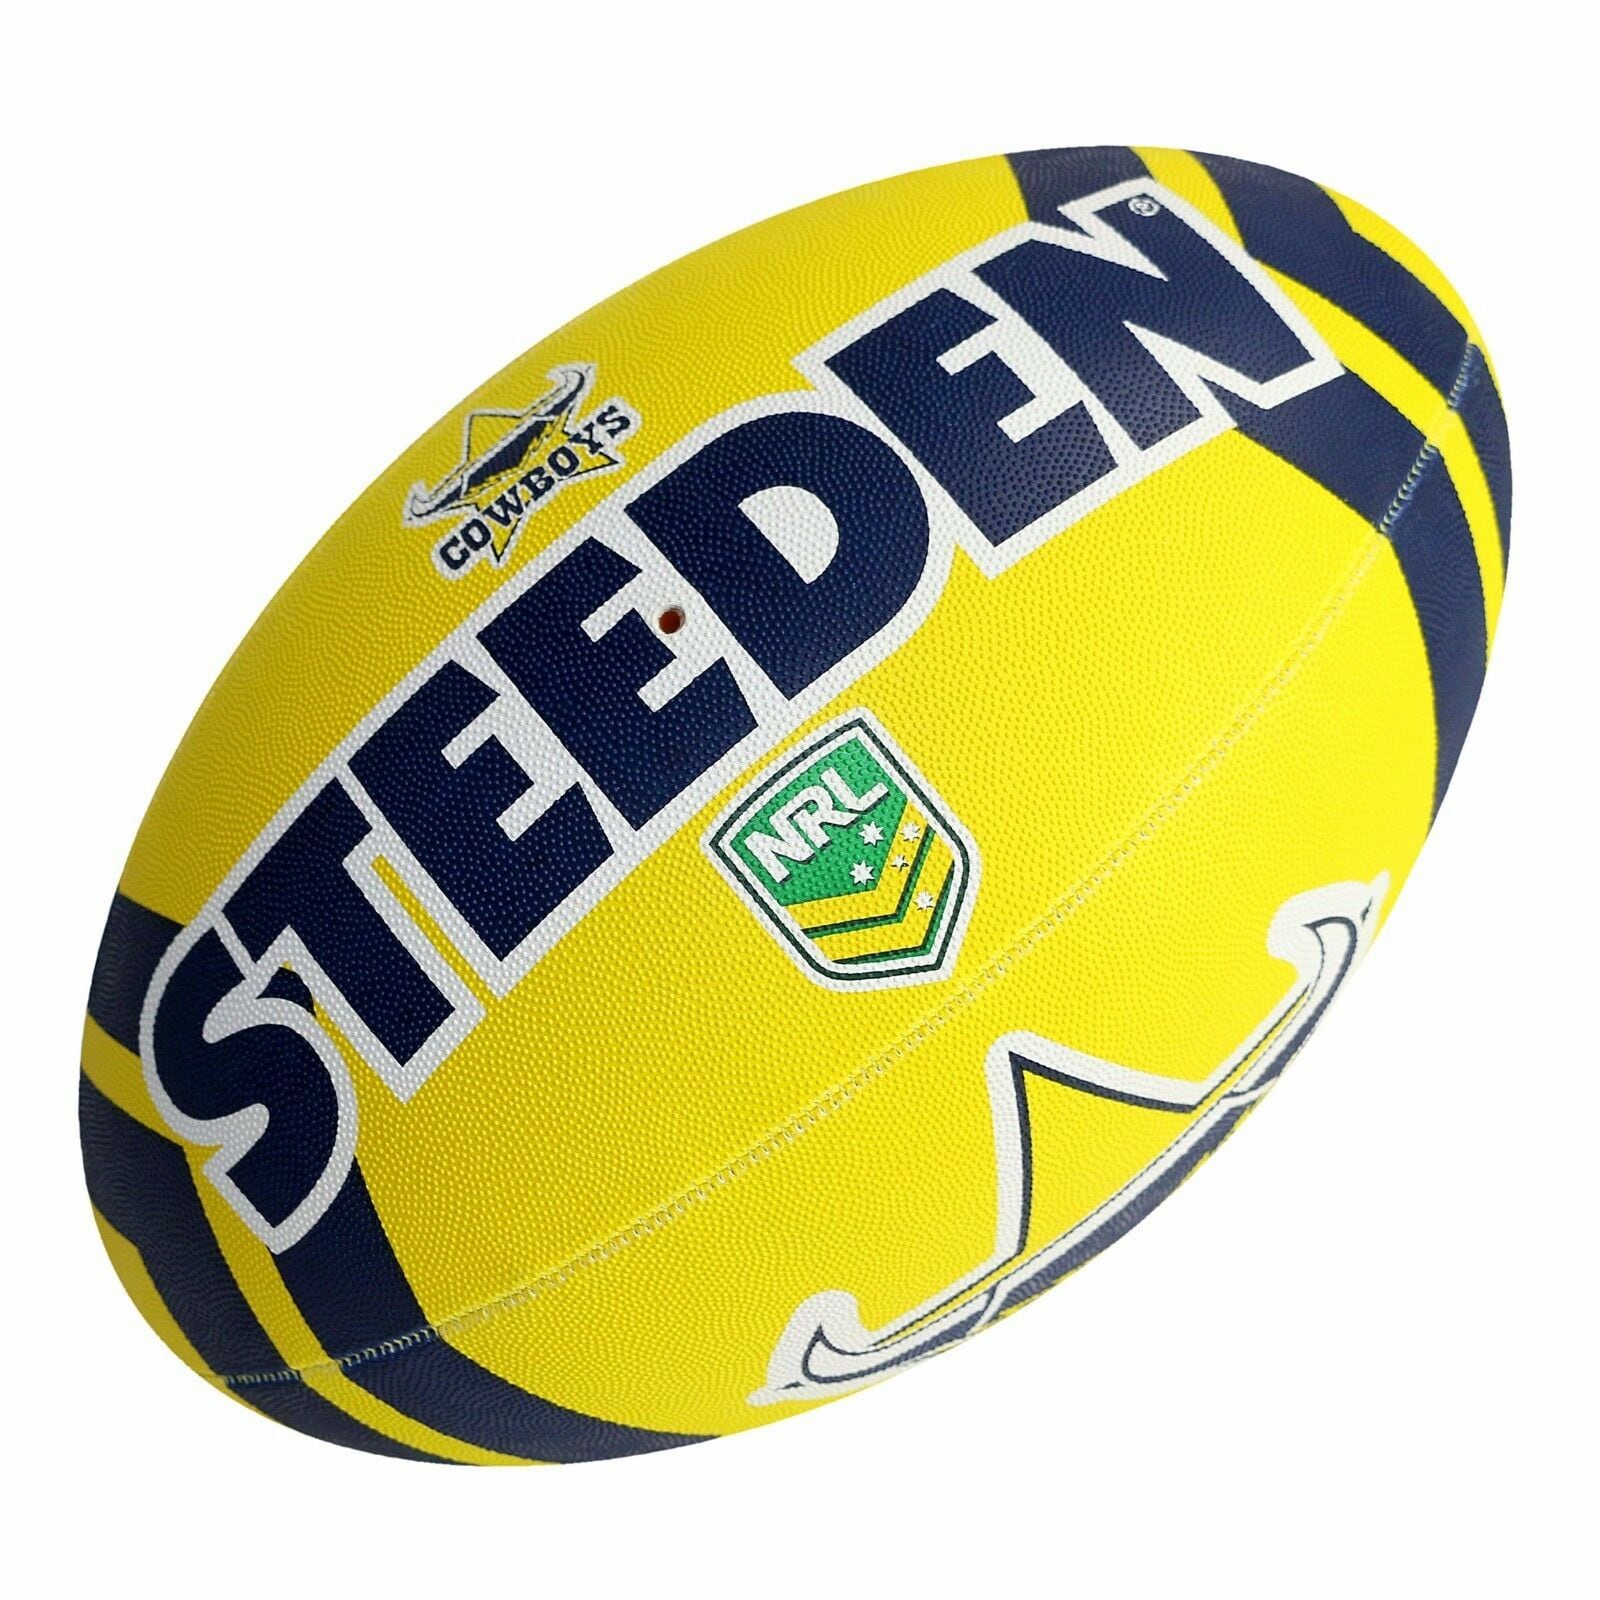 【STEEDEN】Cowboys Supporter Ball Size5